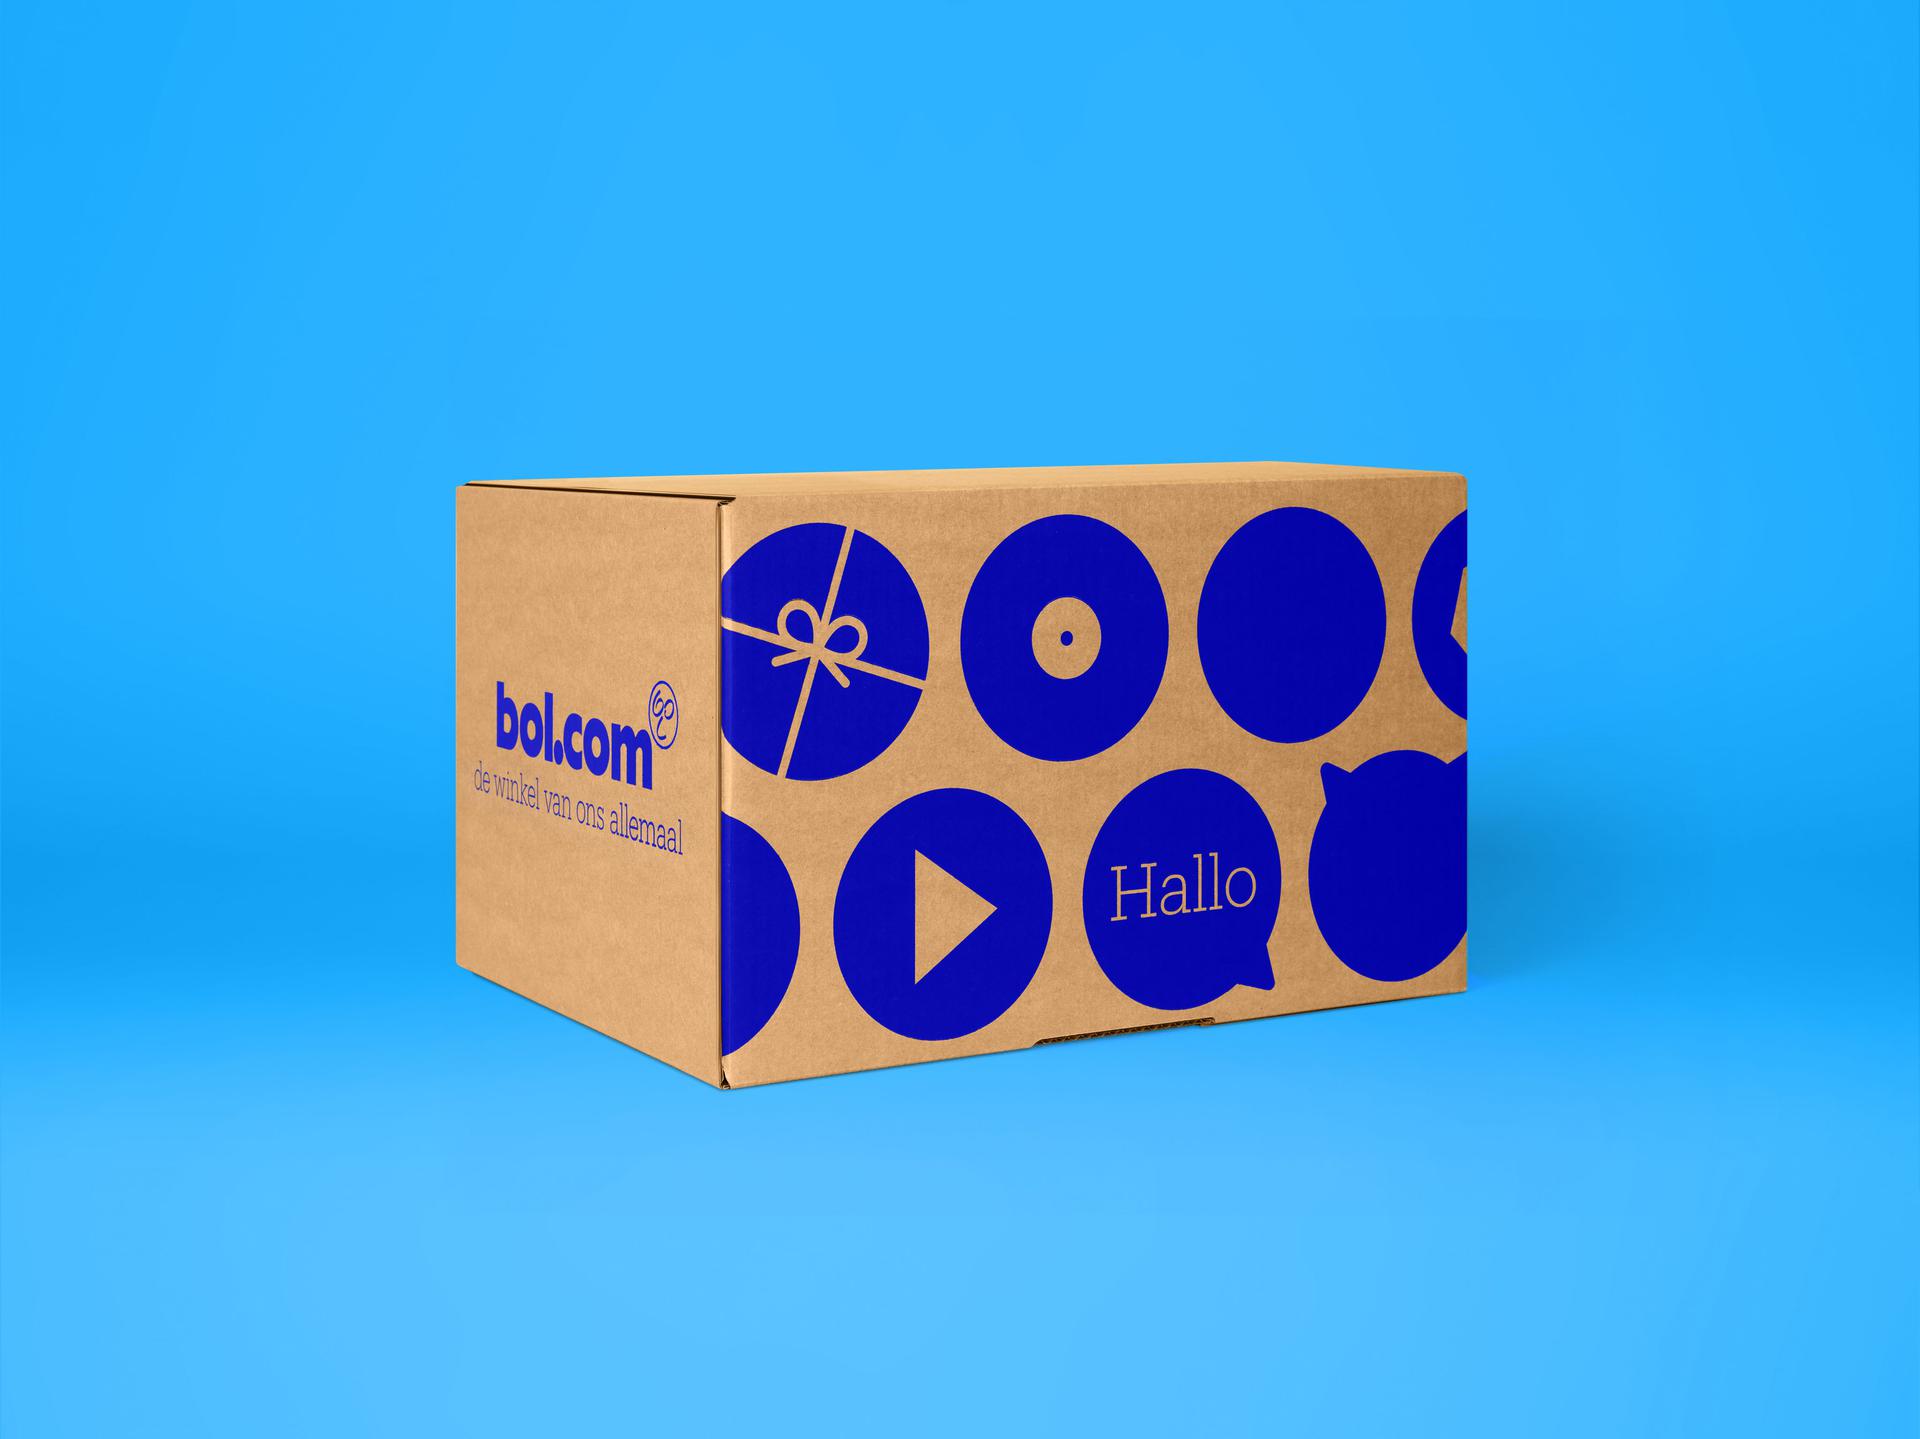 Pakketjes zonder doos: bol.com pakt dit jaar 7 miljoen artikelen niet in